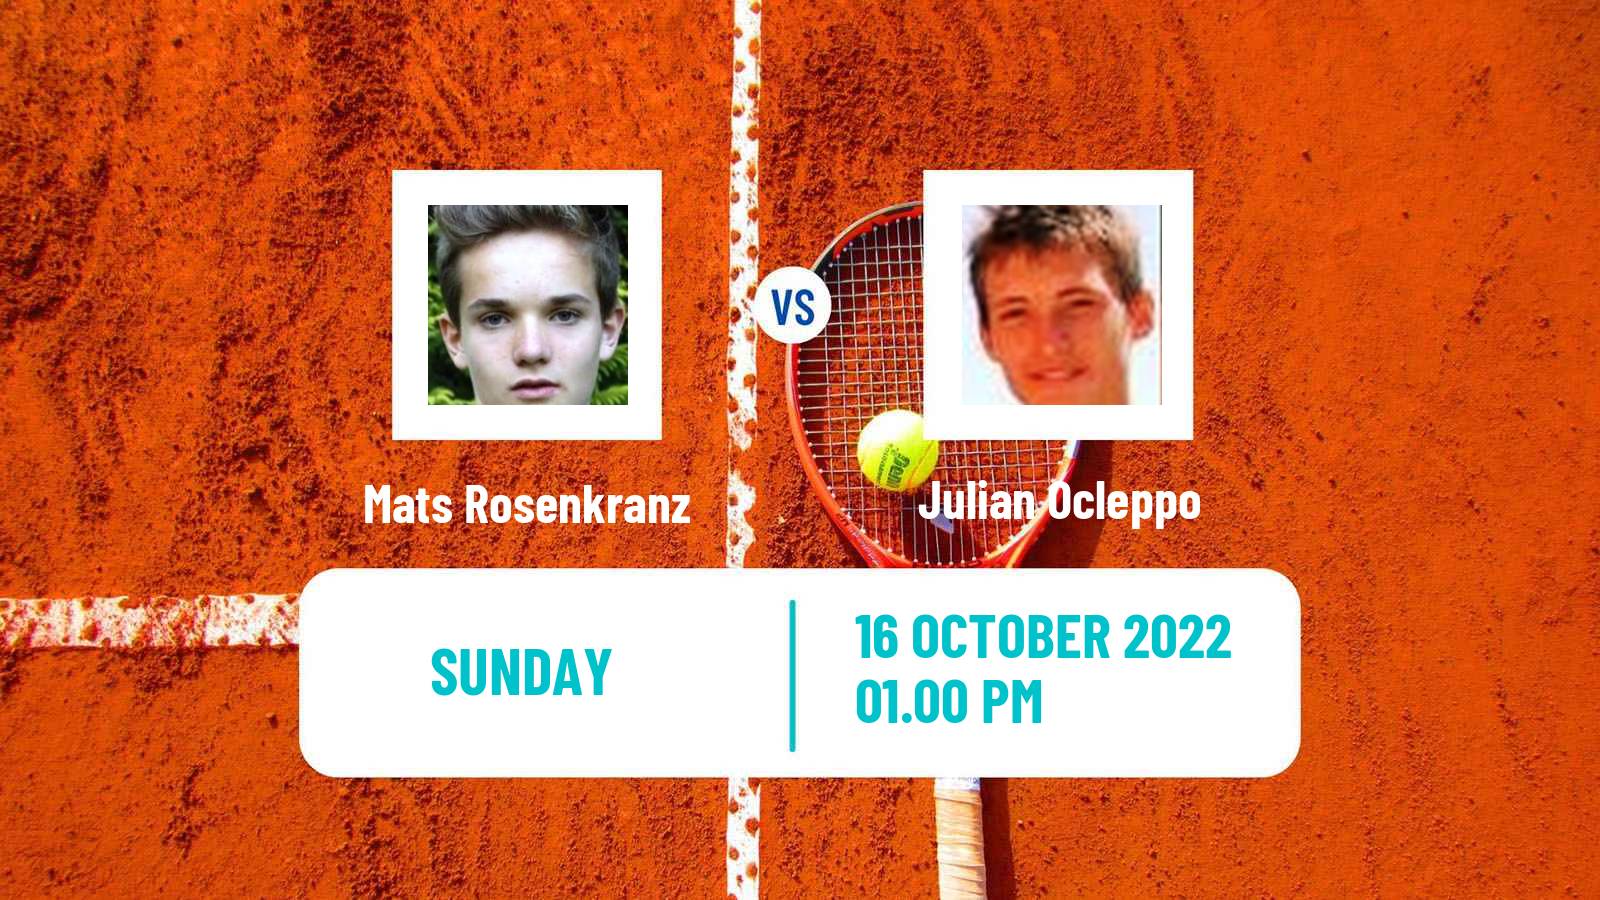 Tennis ATP Challenger Mats Rosenkranz - Julian Ocleppo